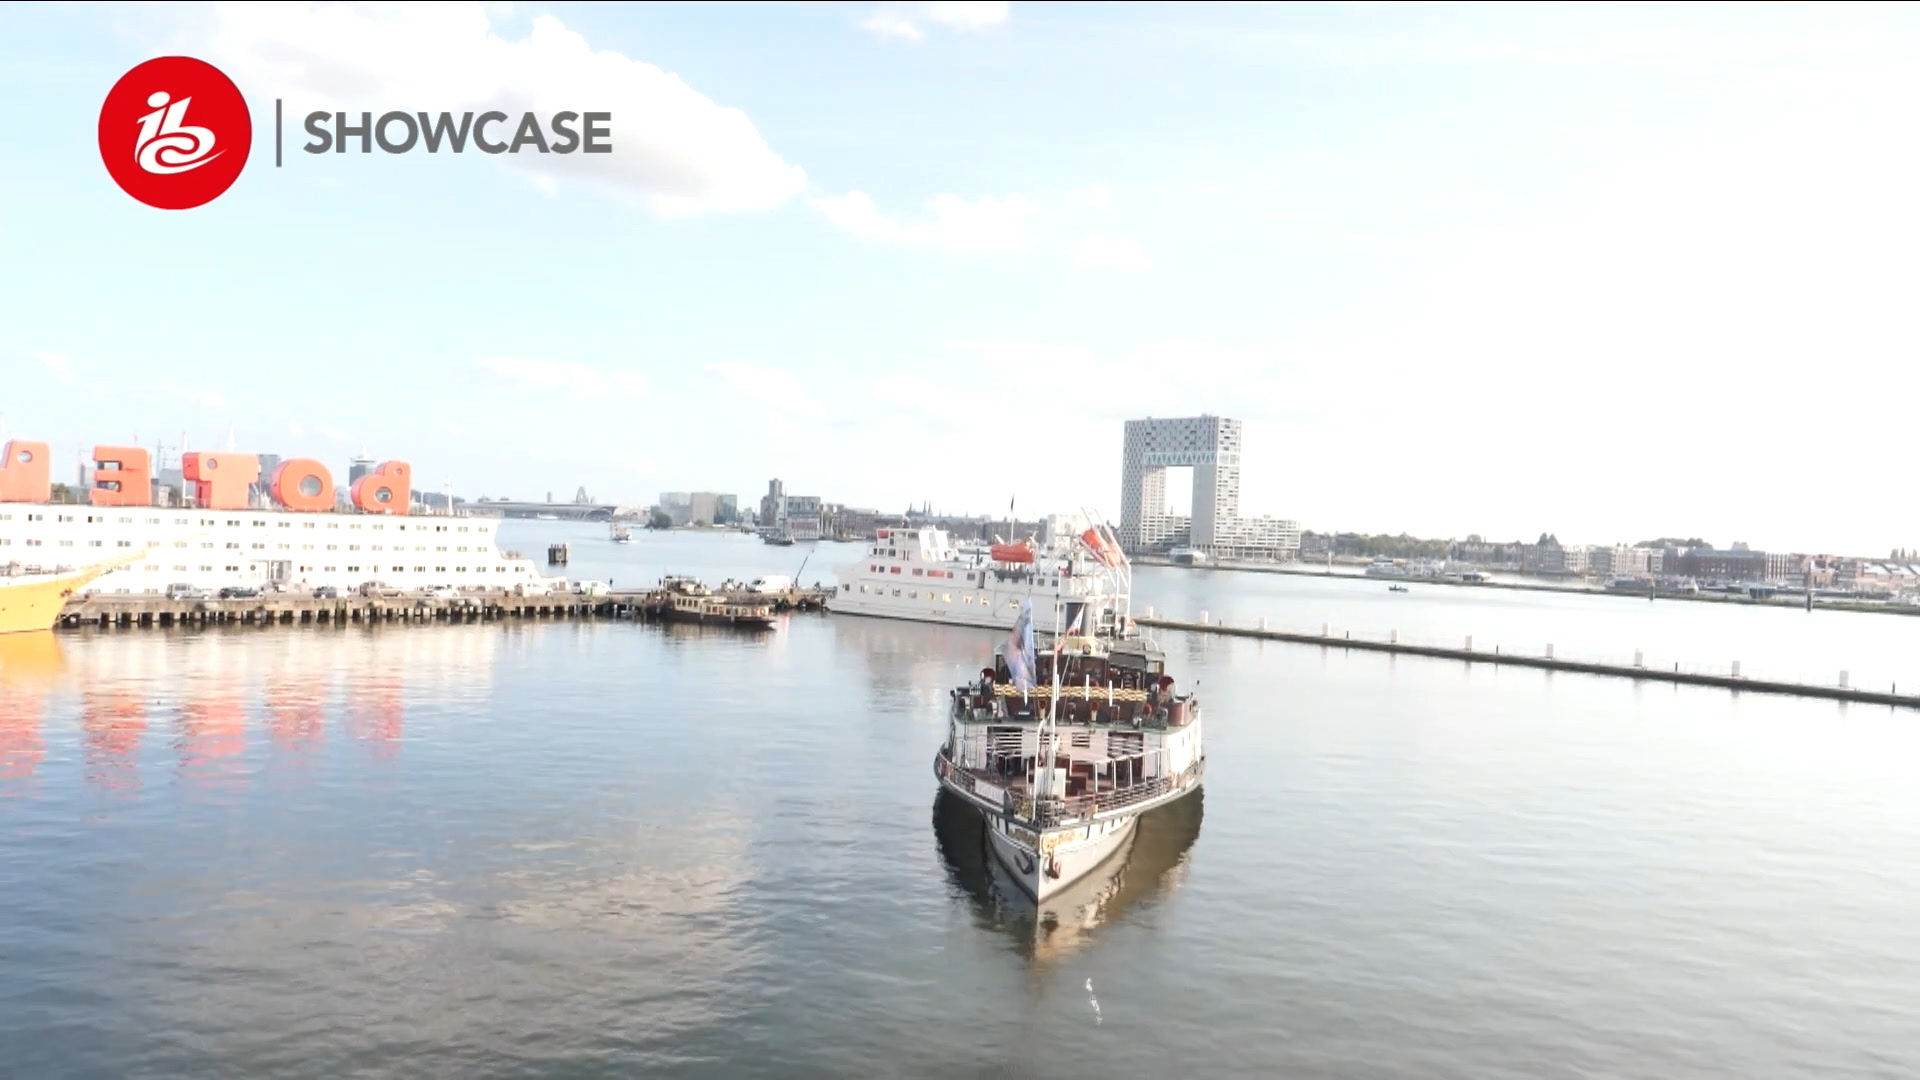 Les signaux ont été envoyés par la 5G depuis ce bateau situé sur un canal d'Amsterdam vers un site central à Londres